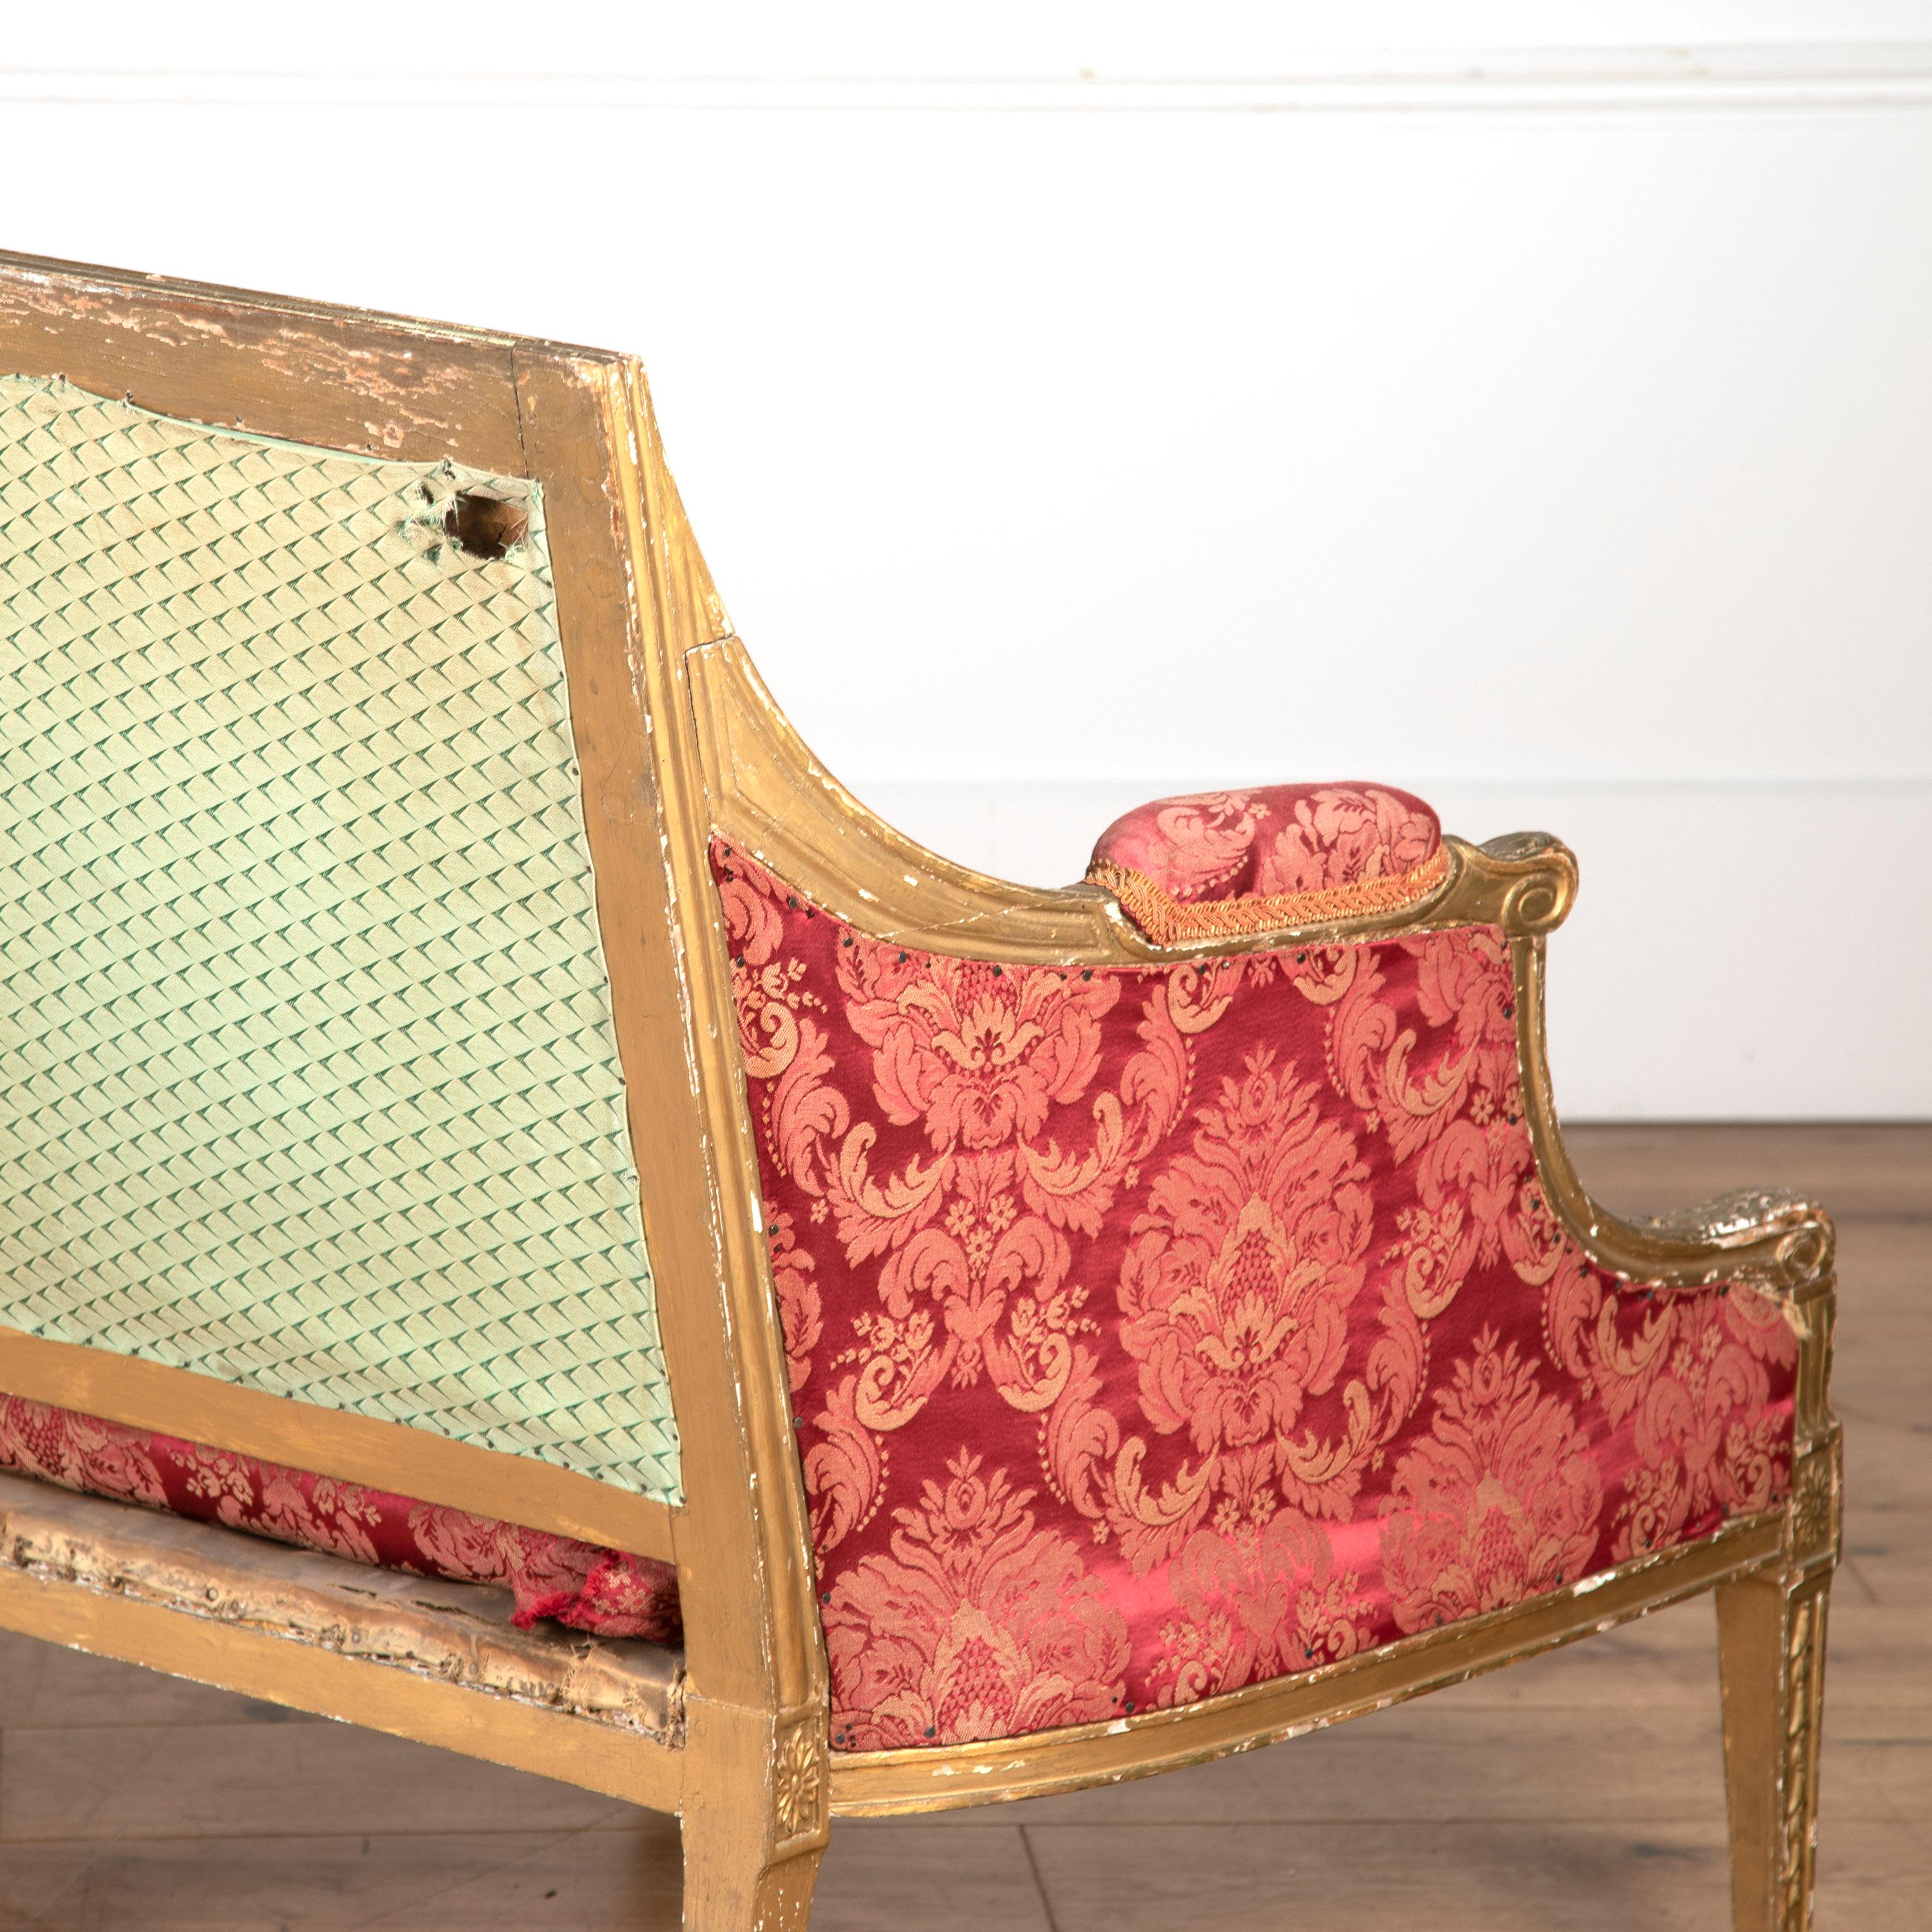 Großes Sofa aus vergoldetem George-III-Holz in der Art von James Wyatt.

Dieses Sofa hat einen detaillierten Rahmen, der Glockenblumen und geschnitzte Rosetten enthält. 

Das Ganze steht auf schönen, spitz zulaufenden Beinen, die das originale